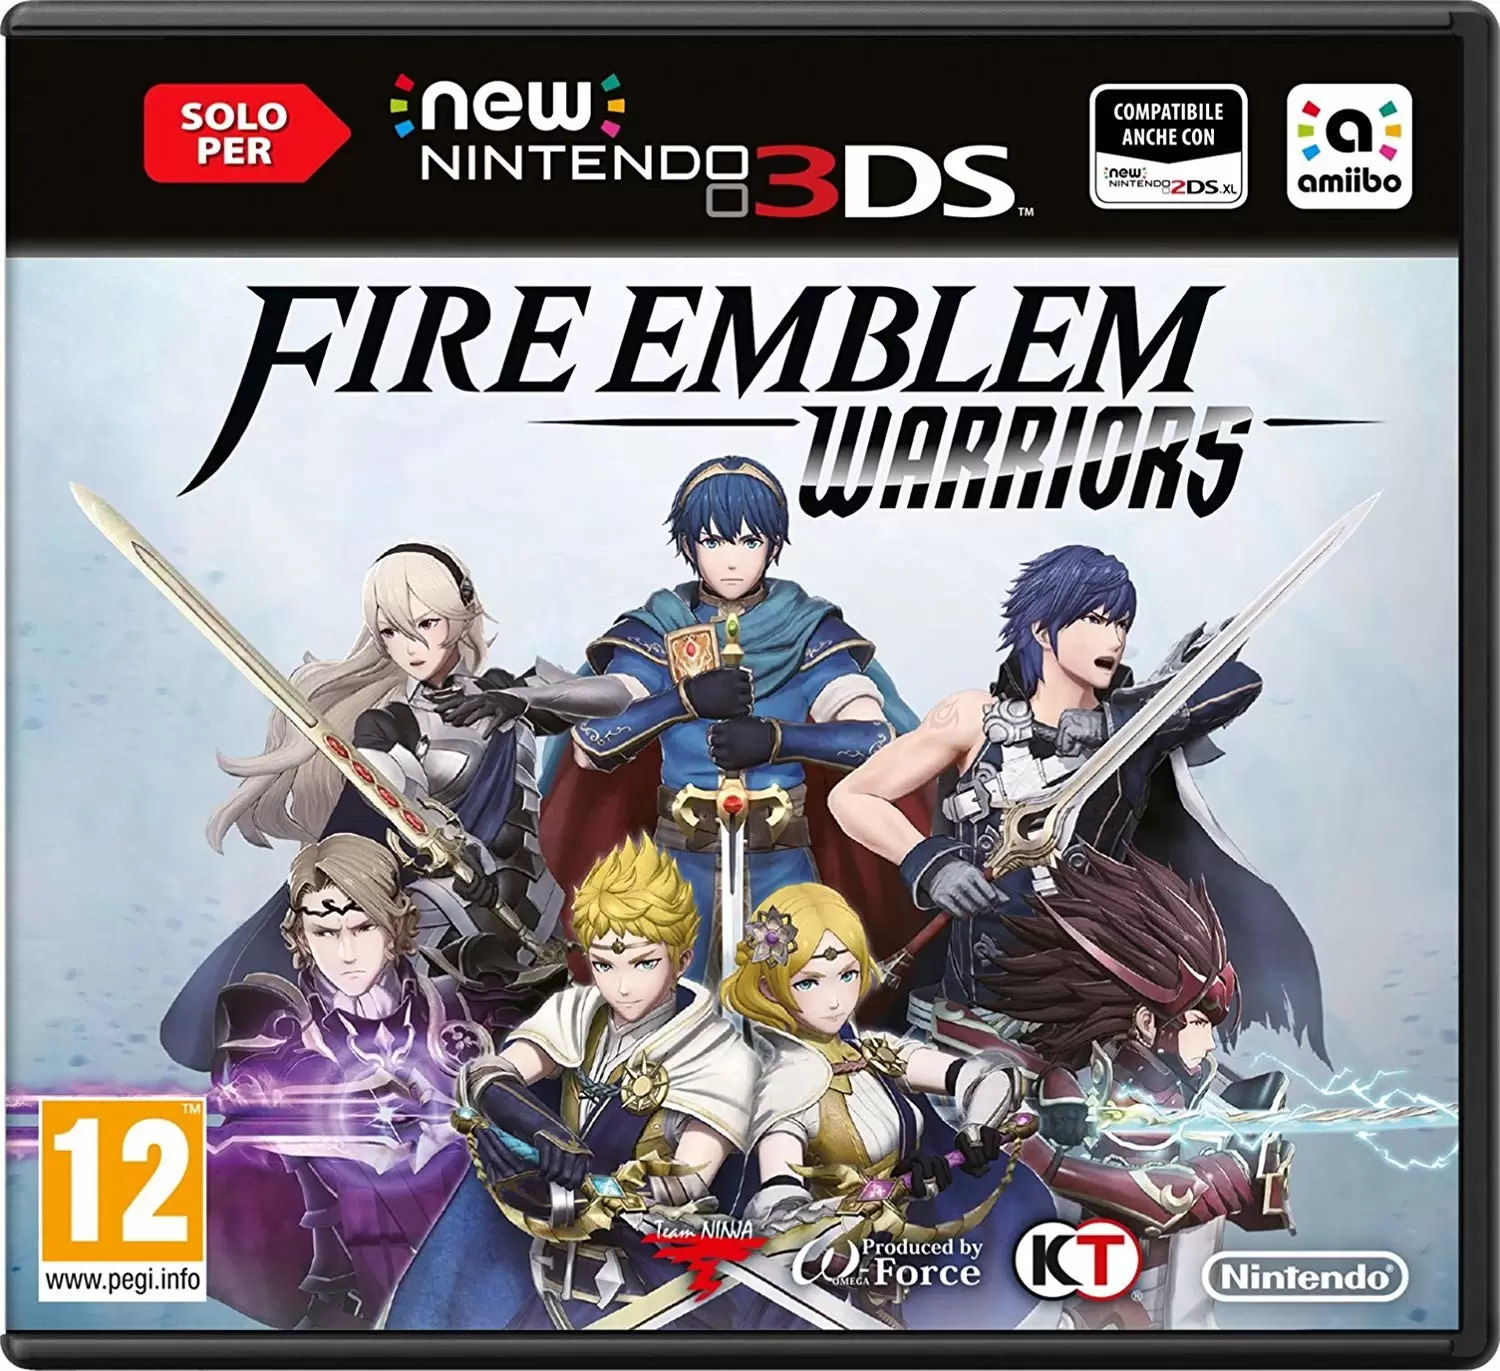 Nintendo 2DS / 3DS Games - Fire Emblem Warriors